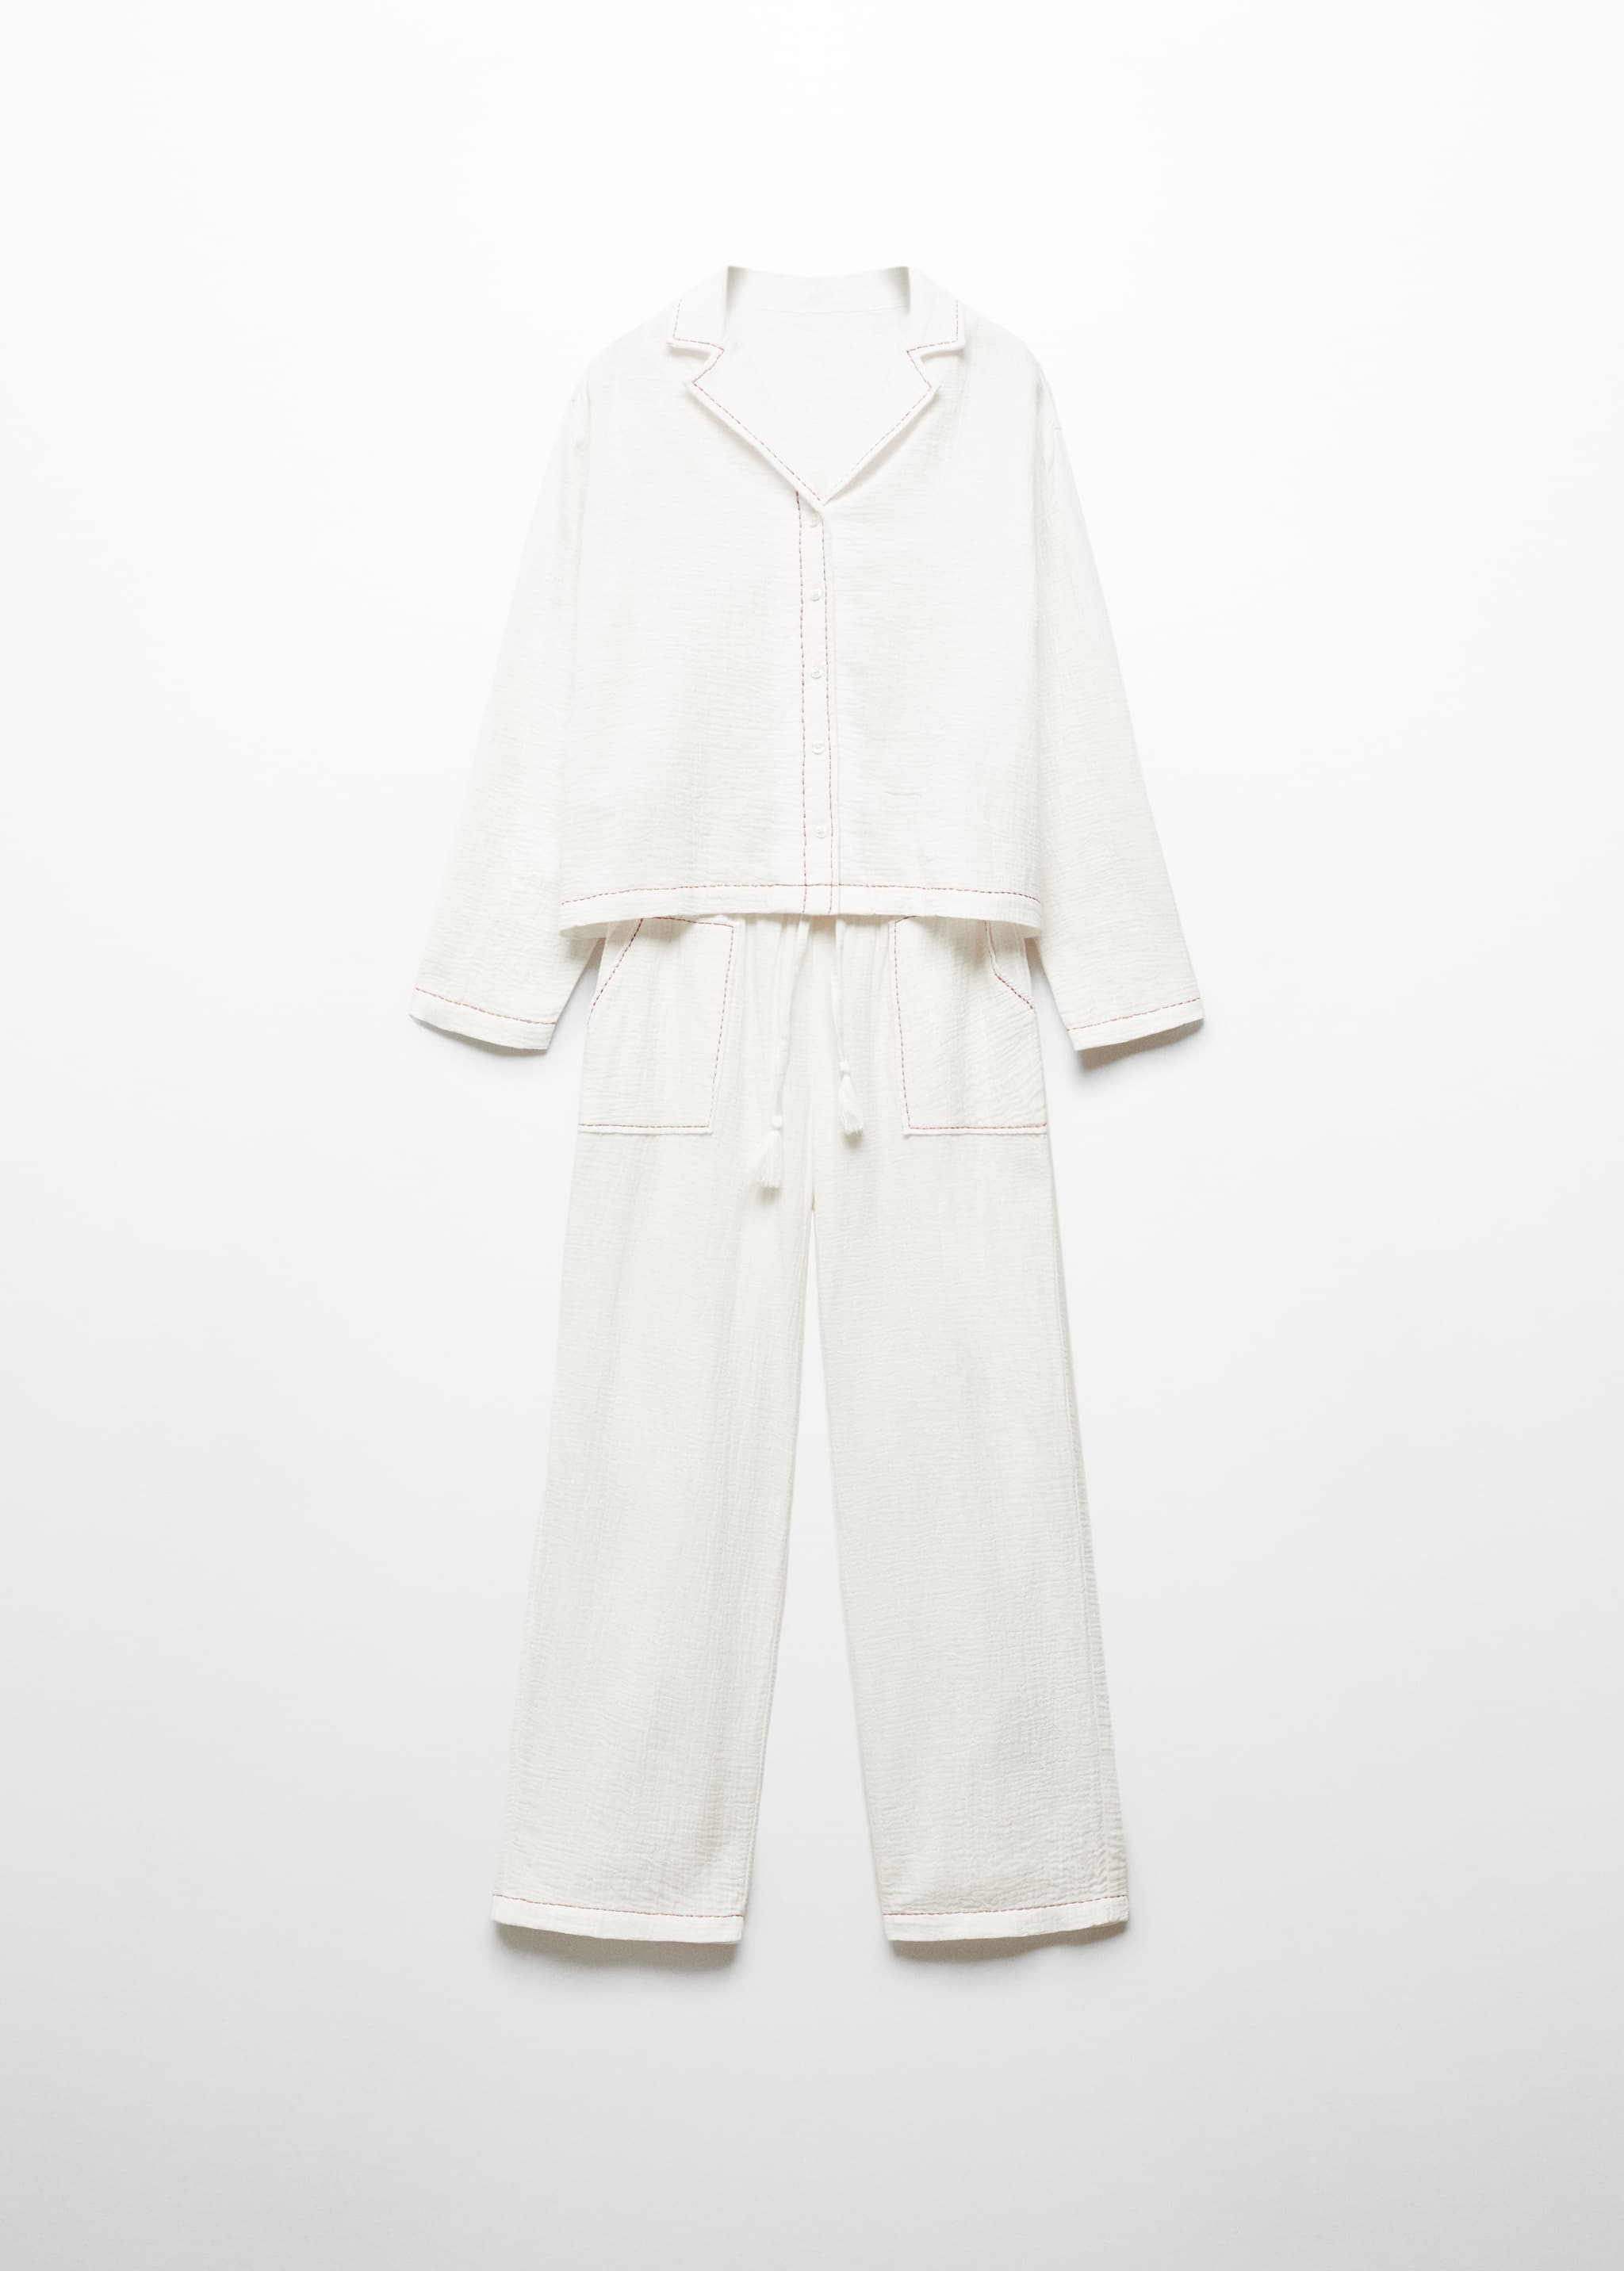 Pijama largo algodón - Artículo sin modelo